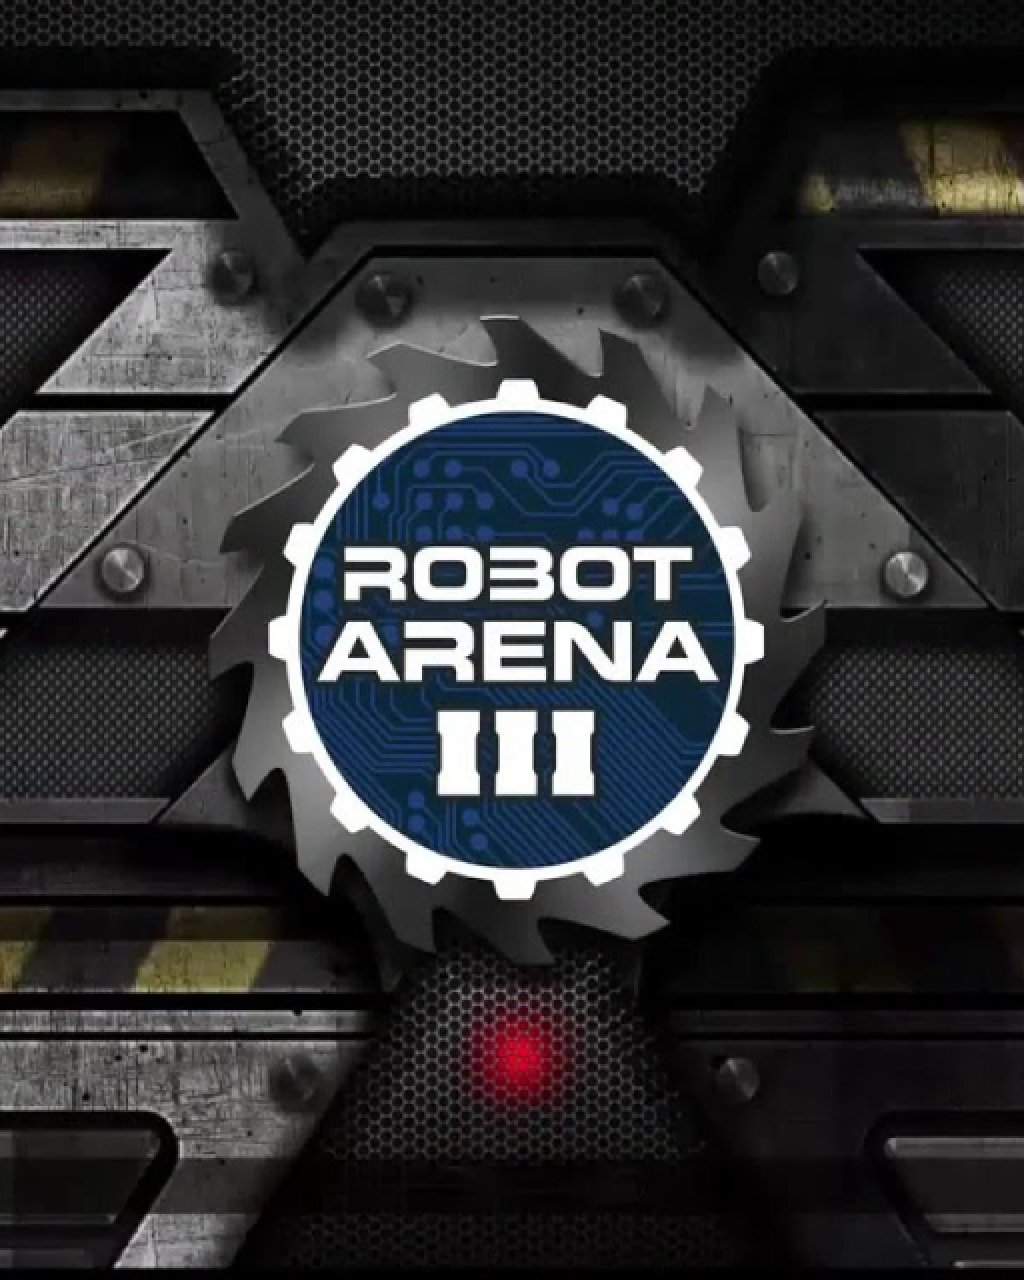 Robot Arena III